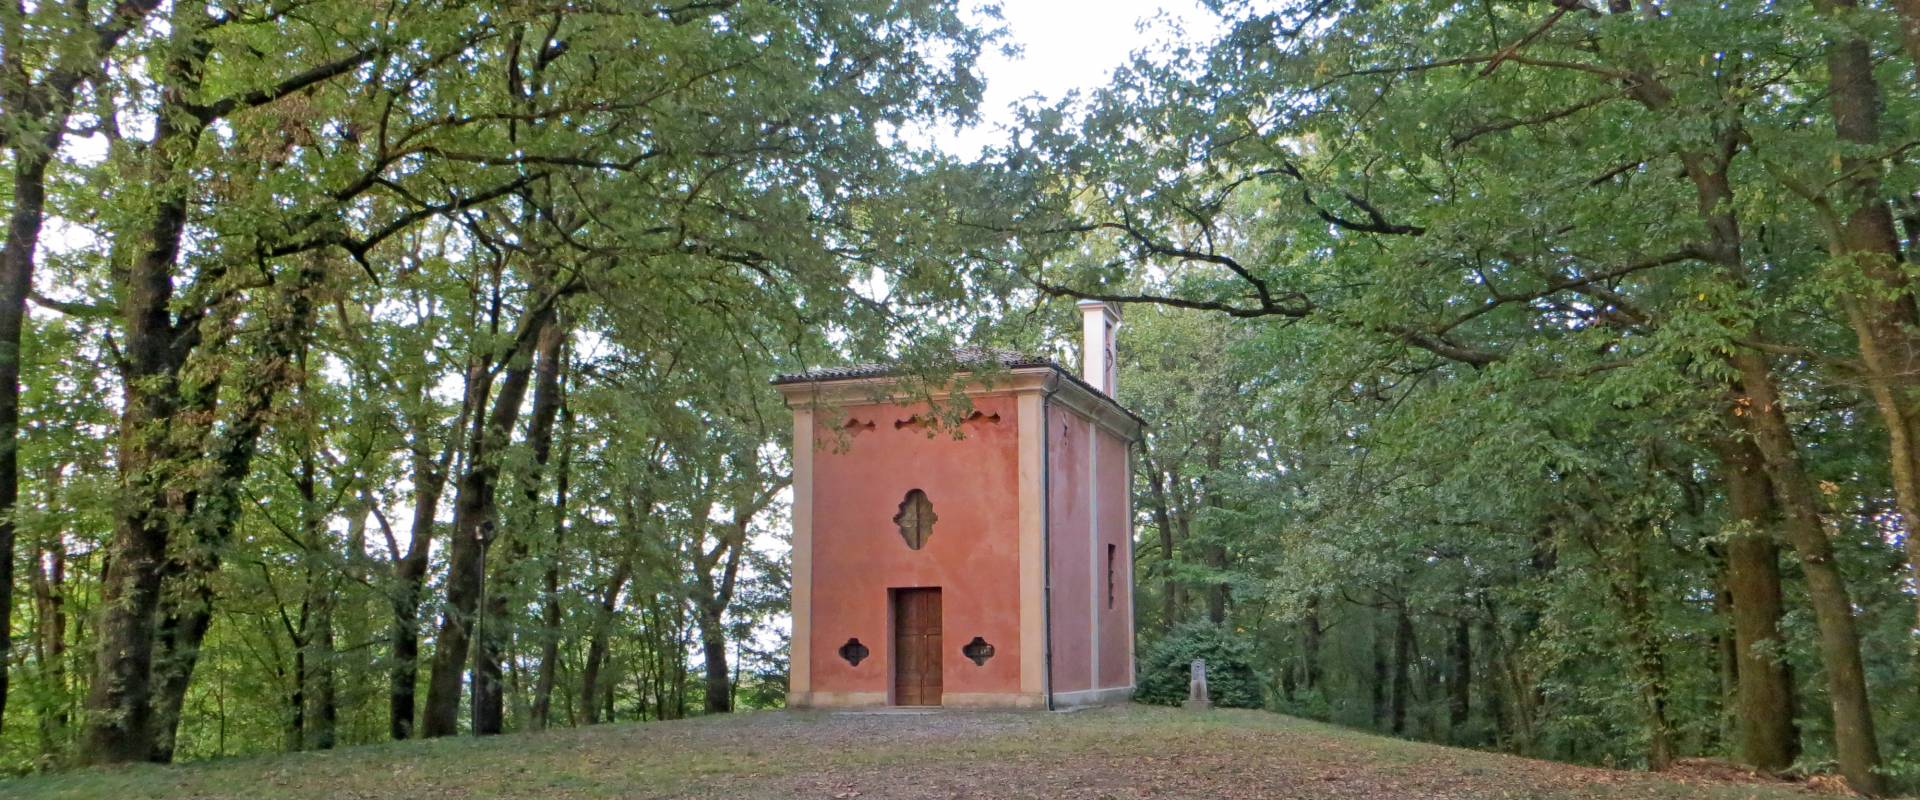 Oratorio della Beata Vergine (Castellaro, Sala Baganza) - facciata 1 2019-09-16 foto di Parma198